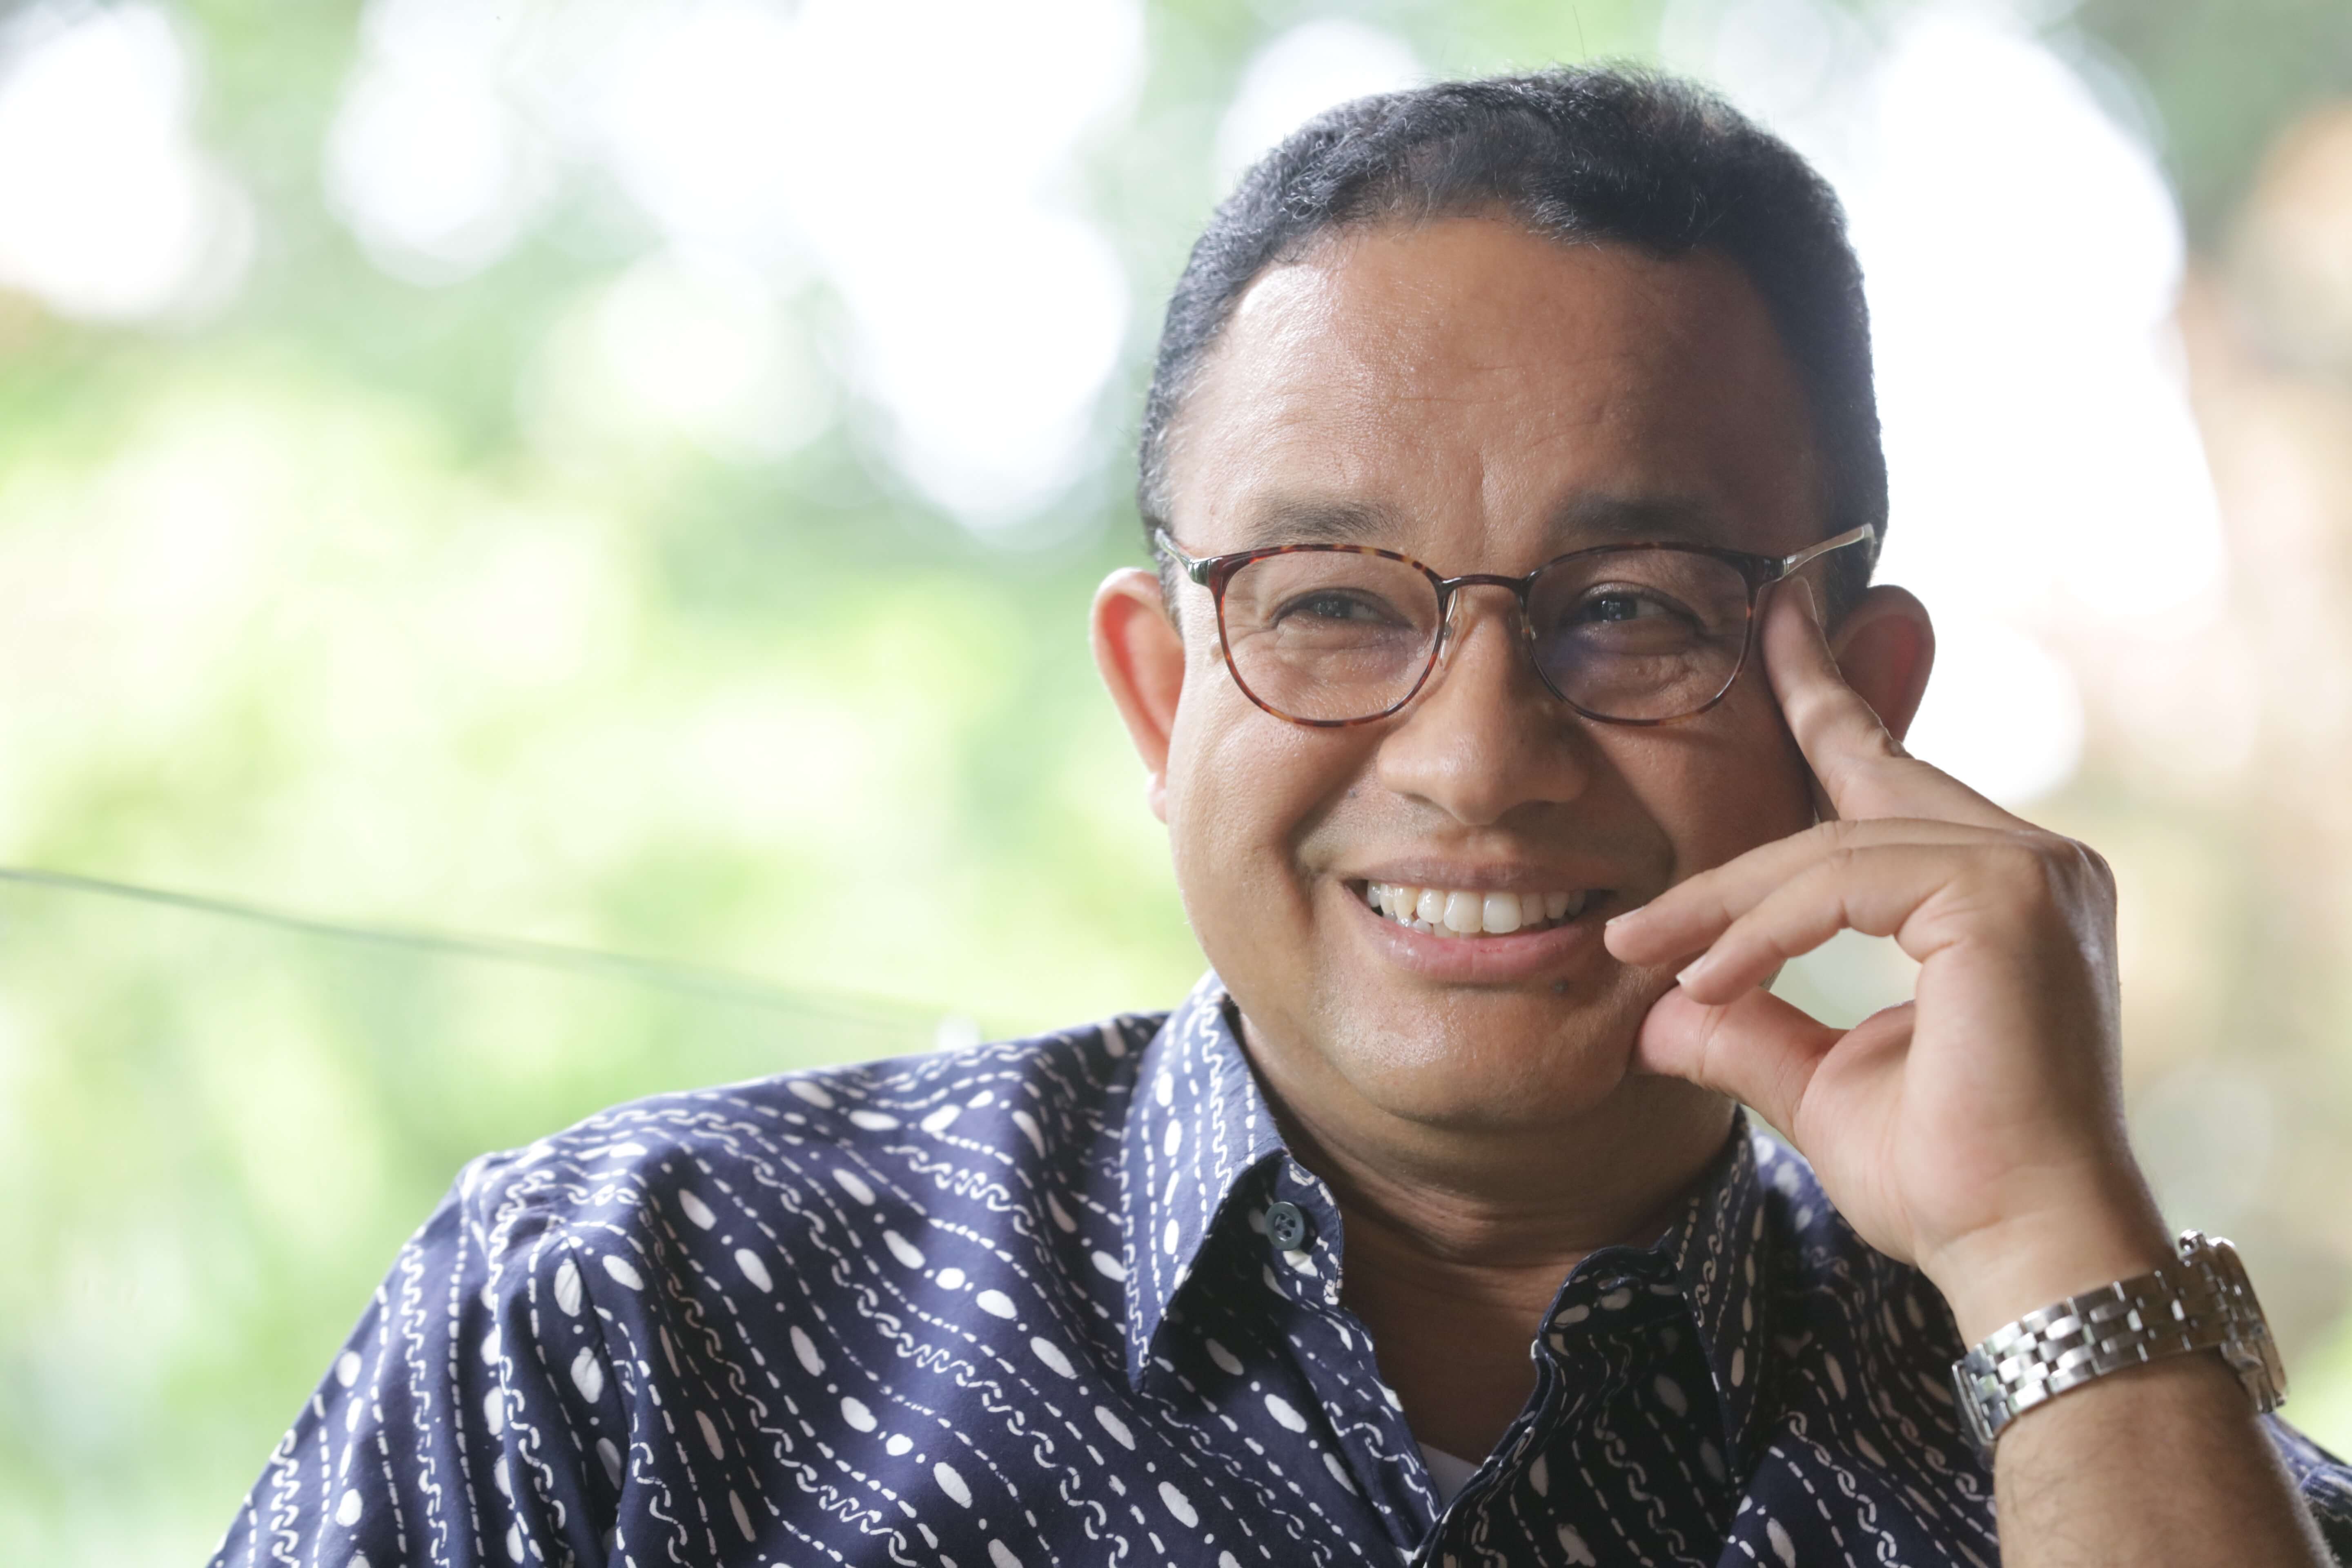 Anies Baswedan Sebut Uang Rp 50 M Bukan Utang Tapi Bentuk Dukungan Pihak Ketiga: yang Memberi Dukungan Ini..